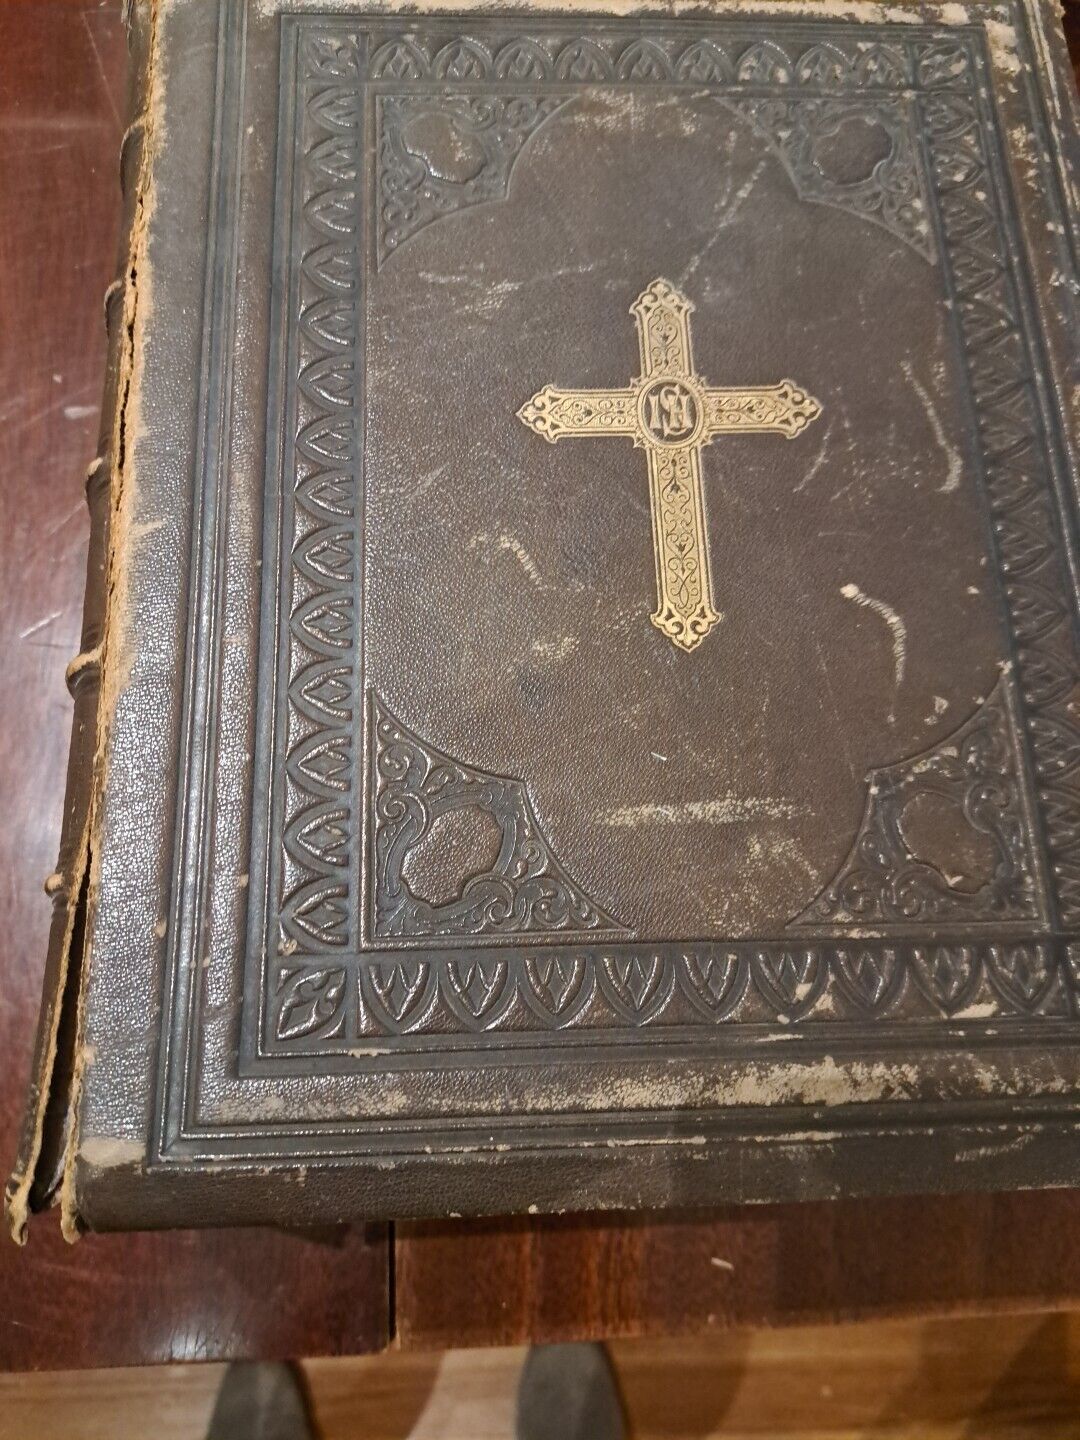 Douay Rheims Bible, Rare, Vintage, 1853